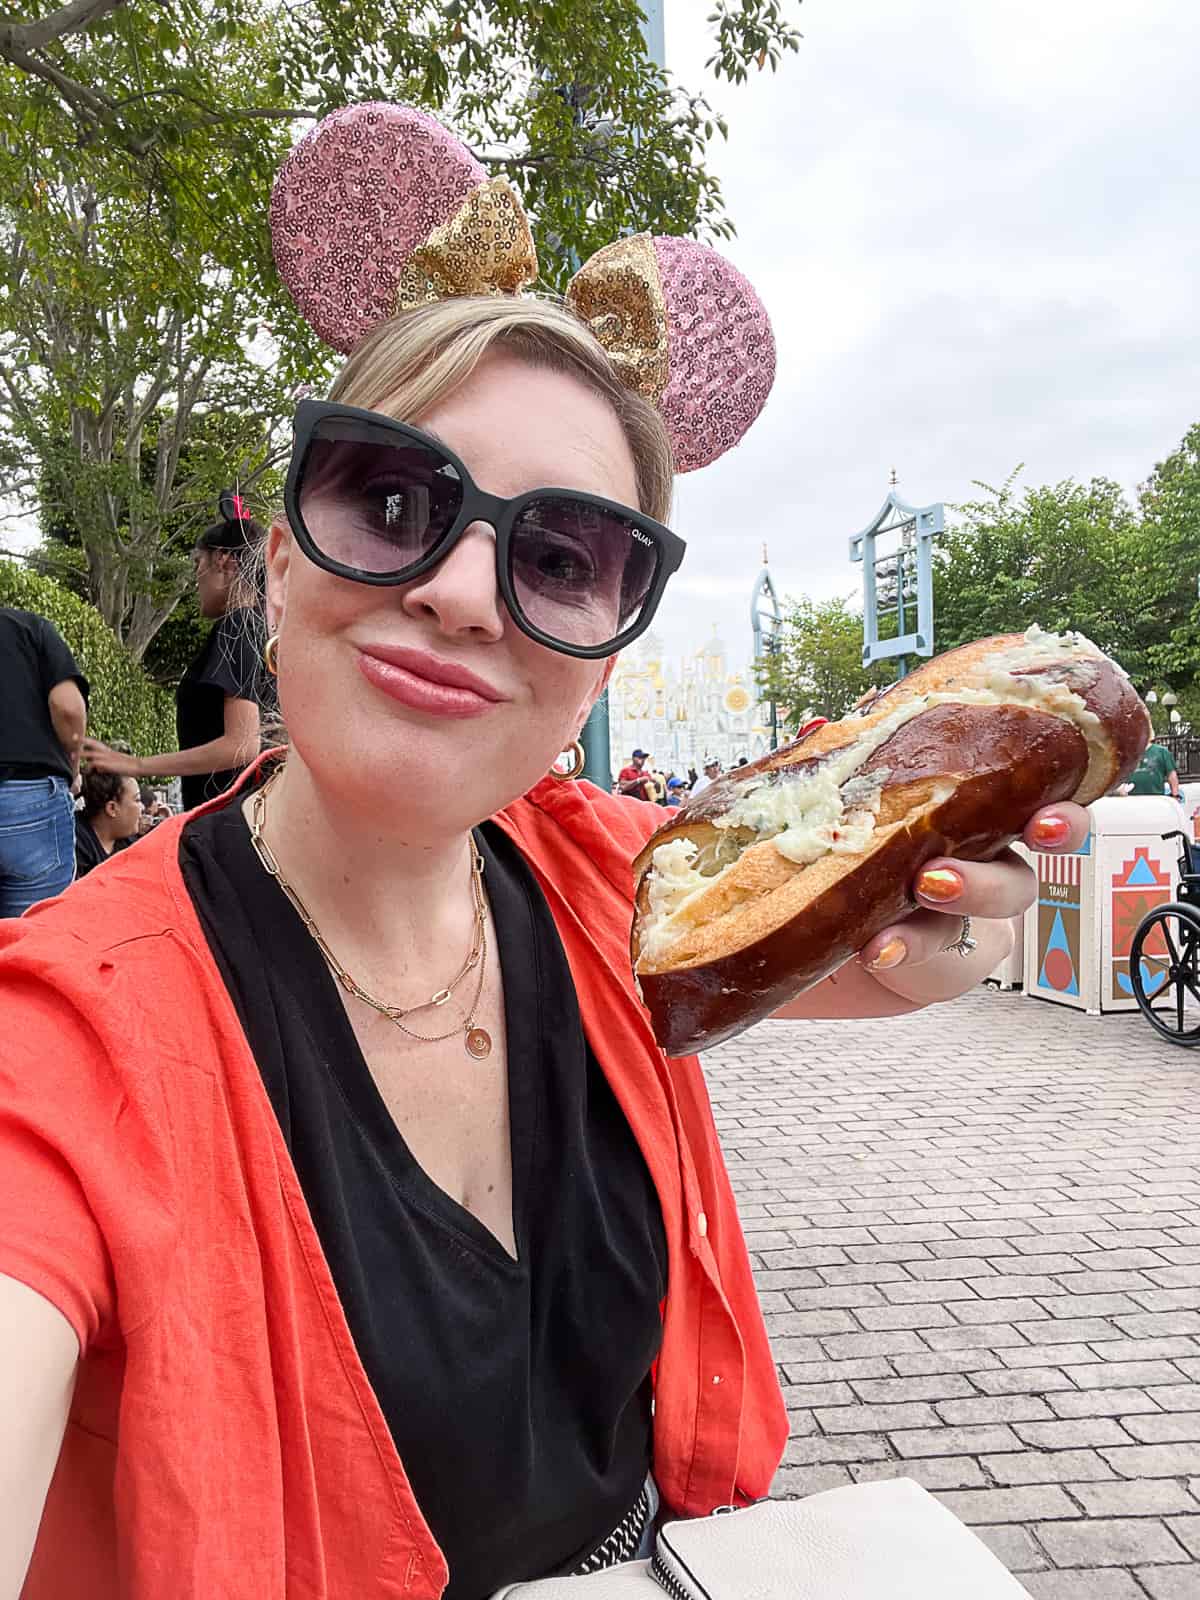 Disneyland food blogger with parmesan cheese pretzel in Disneyland park